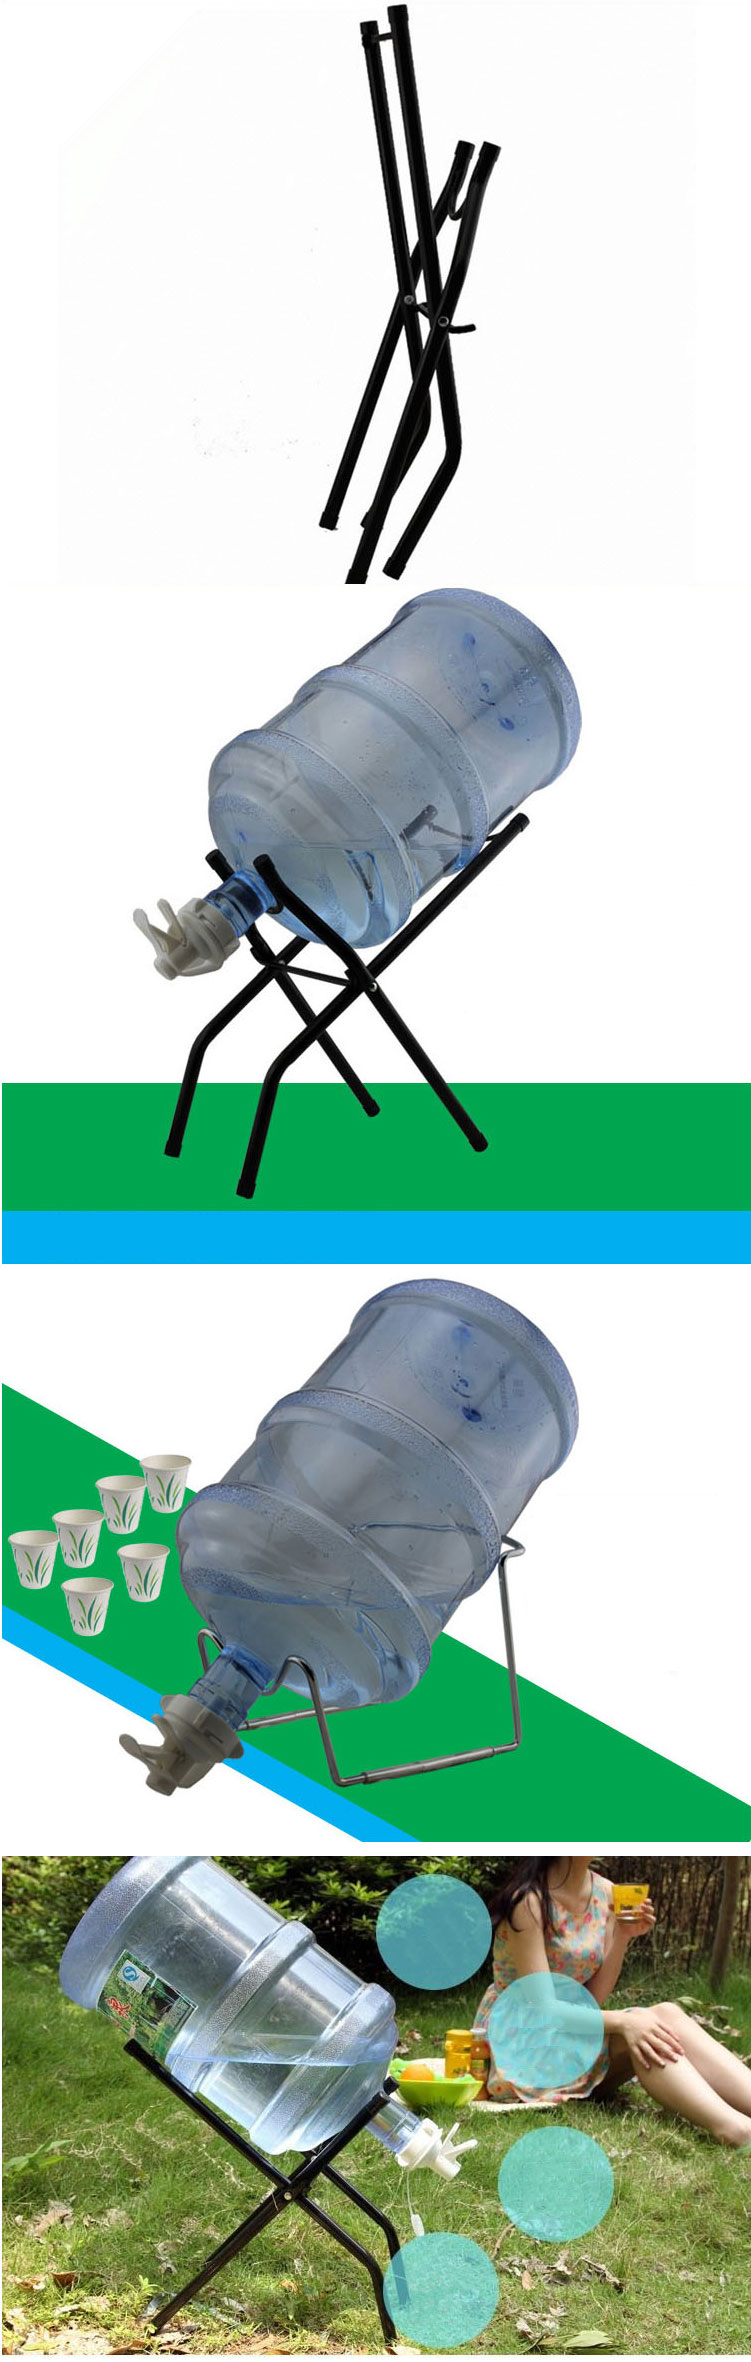 纯净桶装水压水器 吸水器 折叠支架 饮水机压水泵 抽水器矿泉大桶水倒置吸抽 台式加高钢架 。